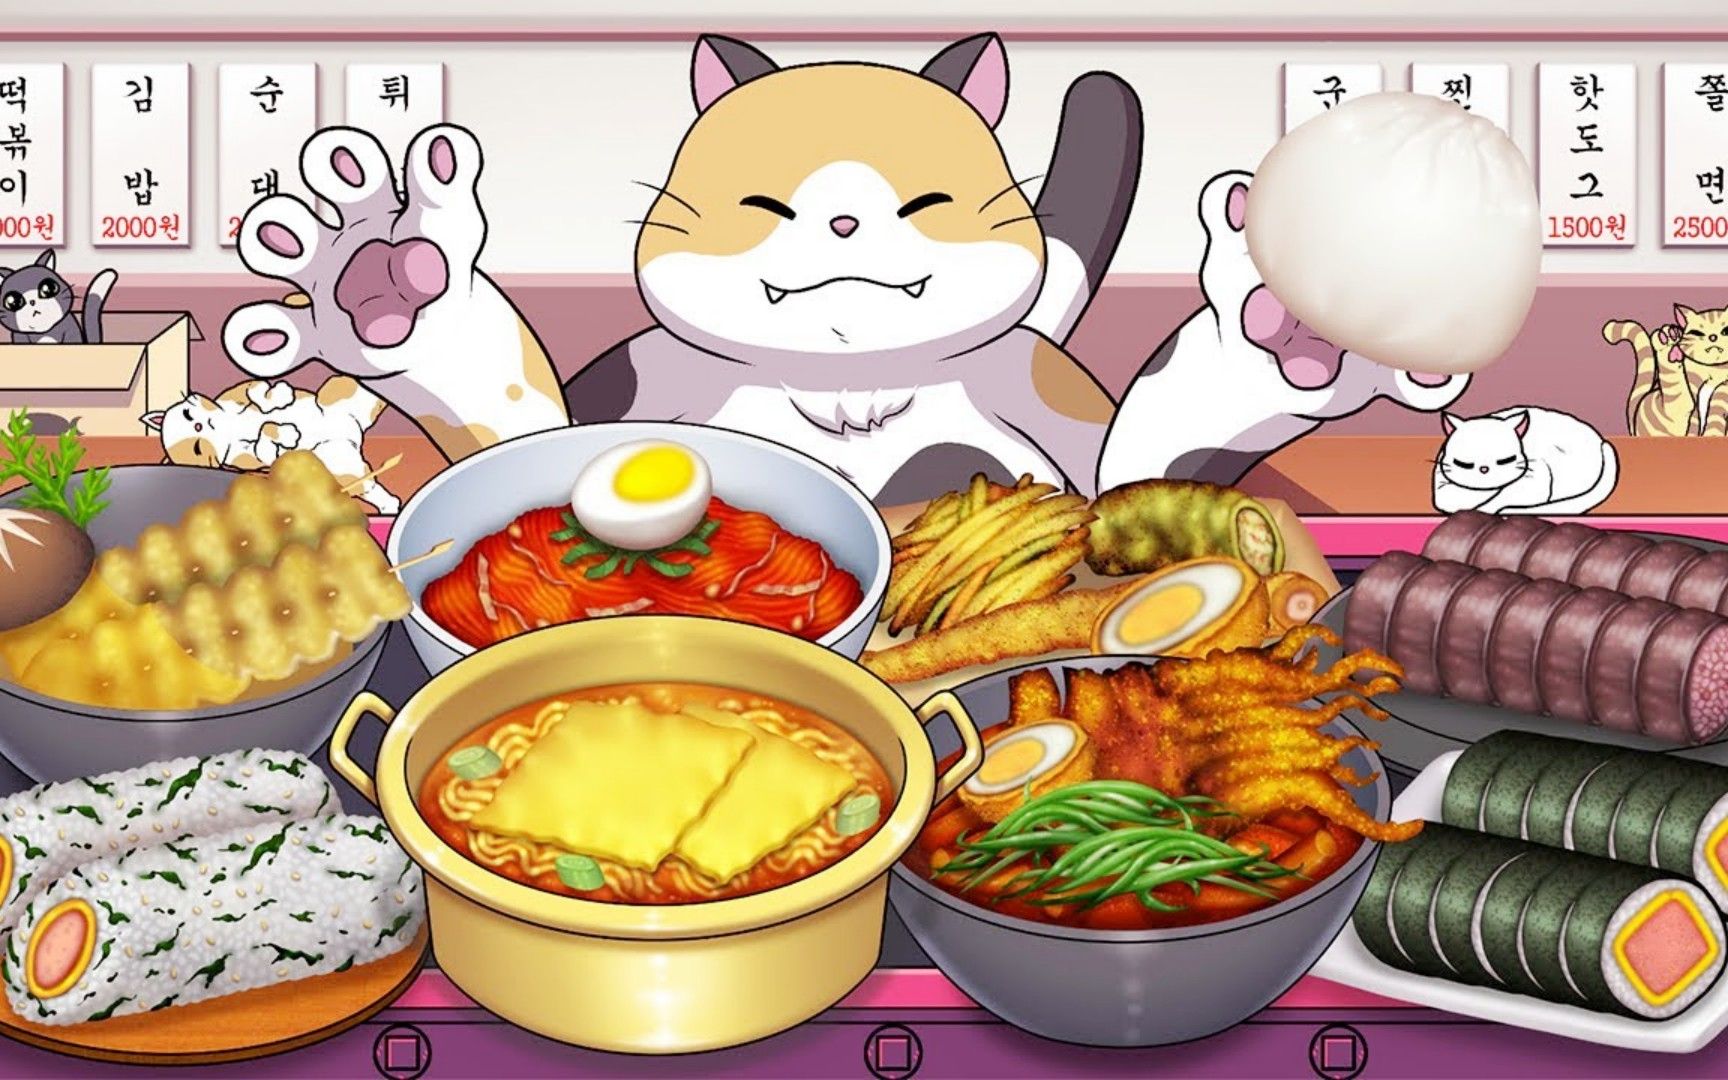 美食动画:料理猫王挑战美味的芝士火鸡面,和多种口味的寿司!